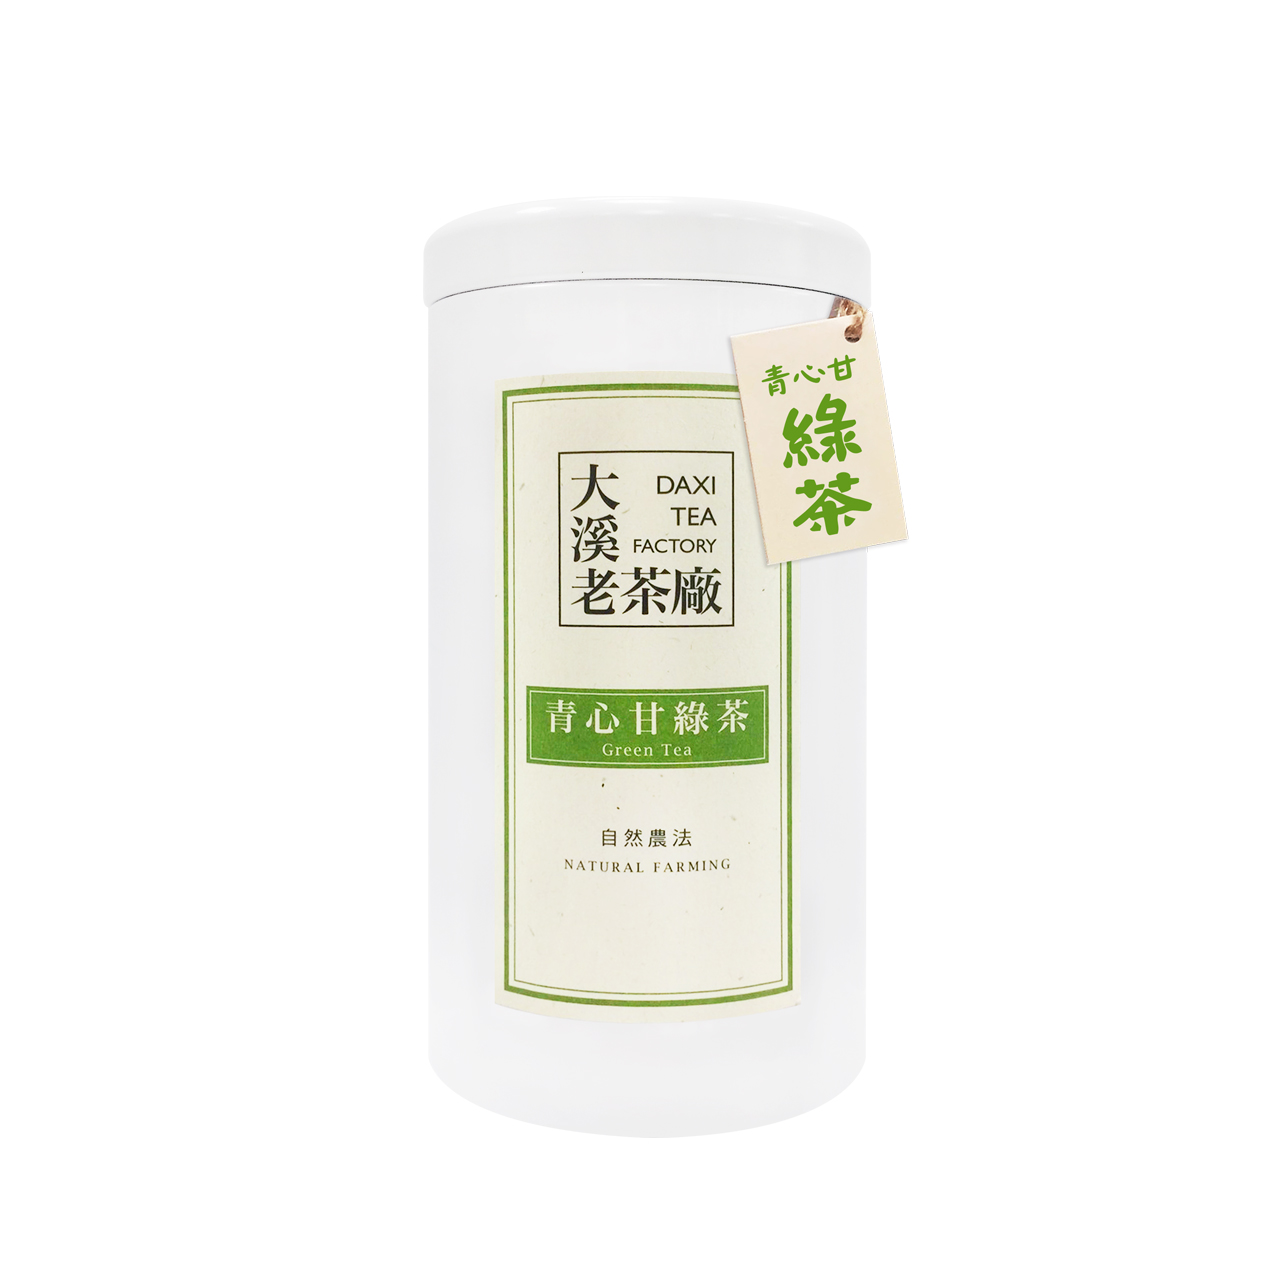 大溪-青心甘绿茶(春茶)(自然农法)